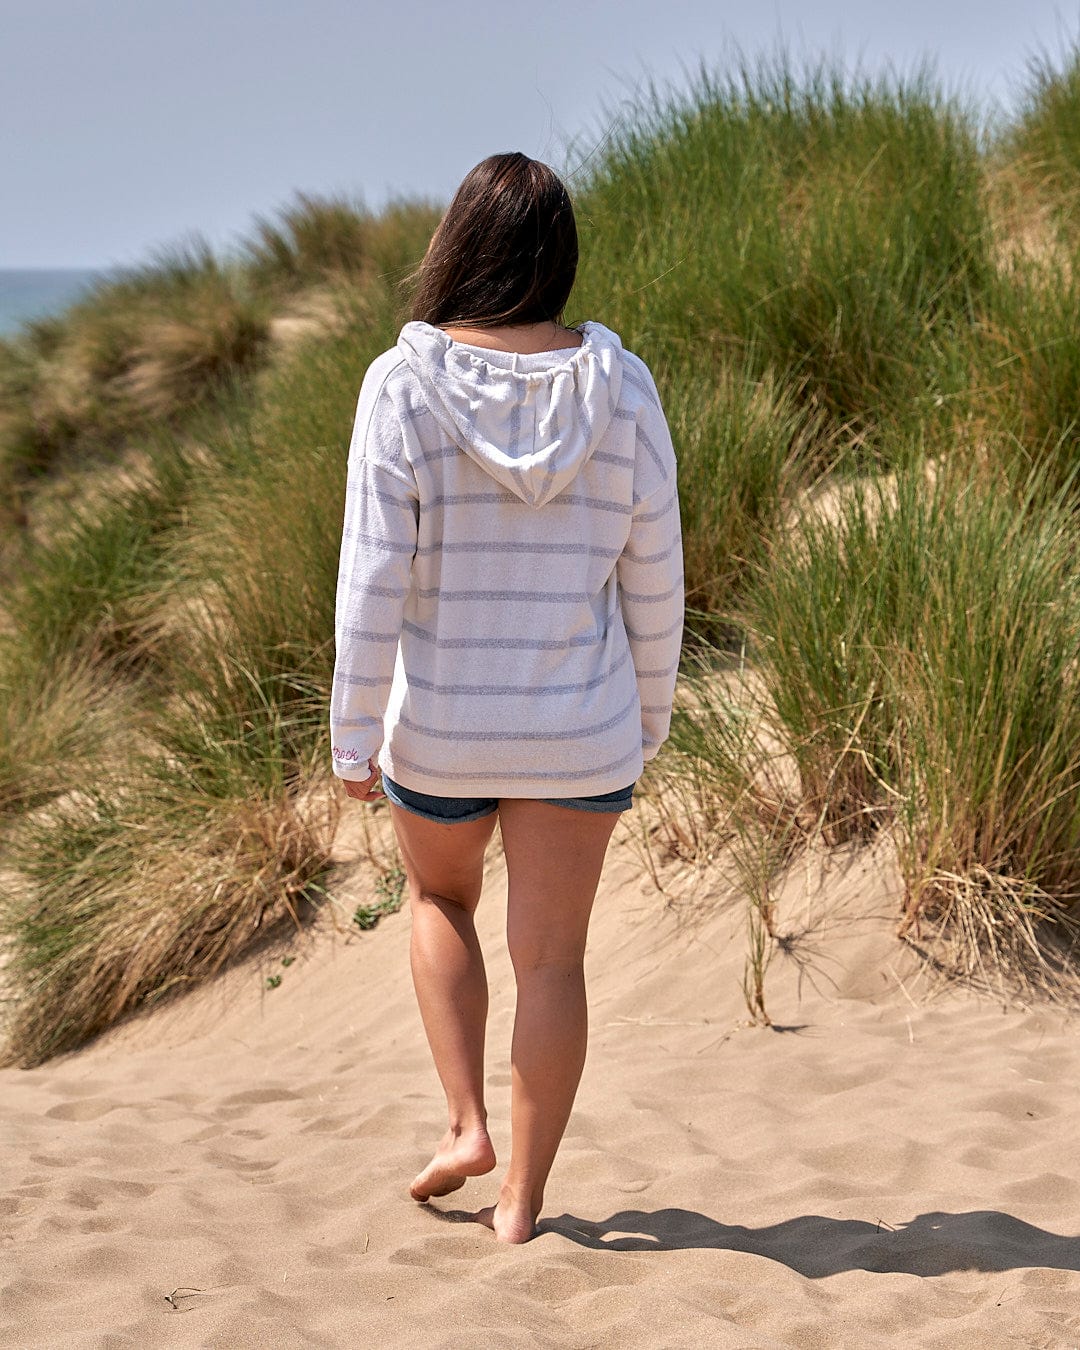 A woman walking on a sand dune near the ocean wearing the Saltrock Kennedy - Womens Pop Hoodie - Cream.